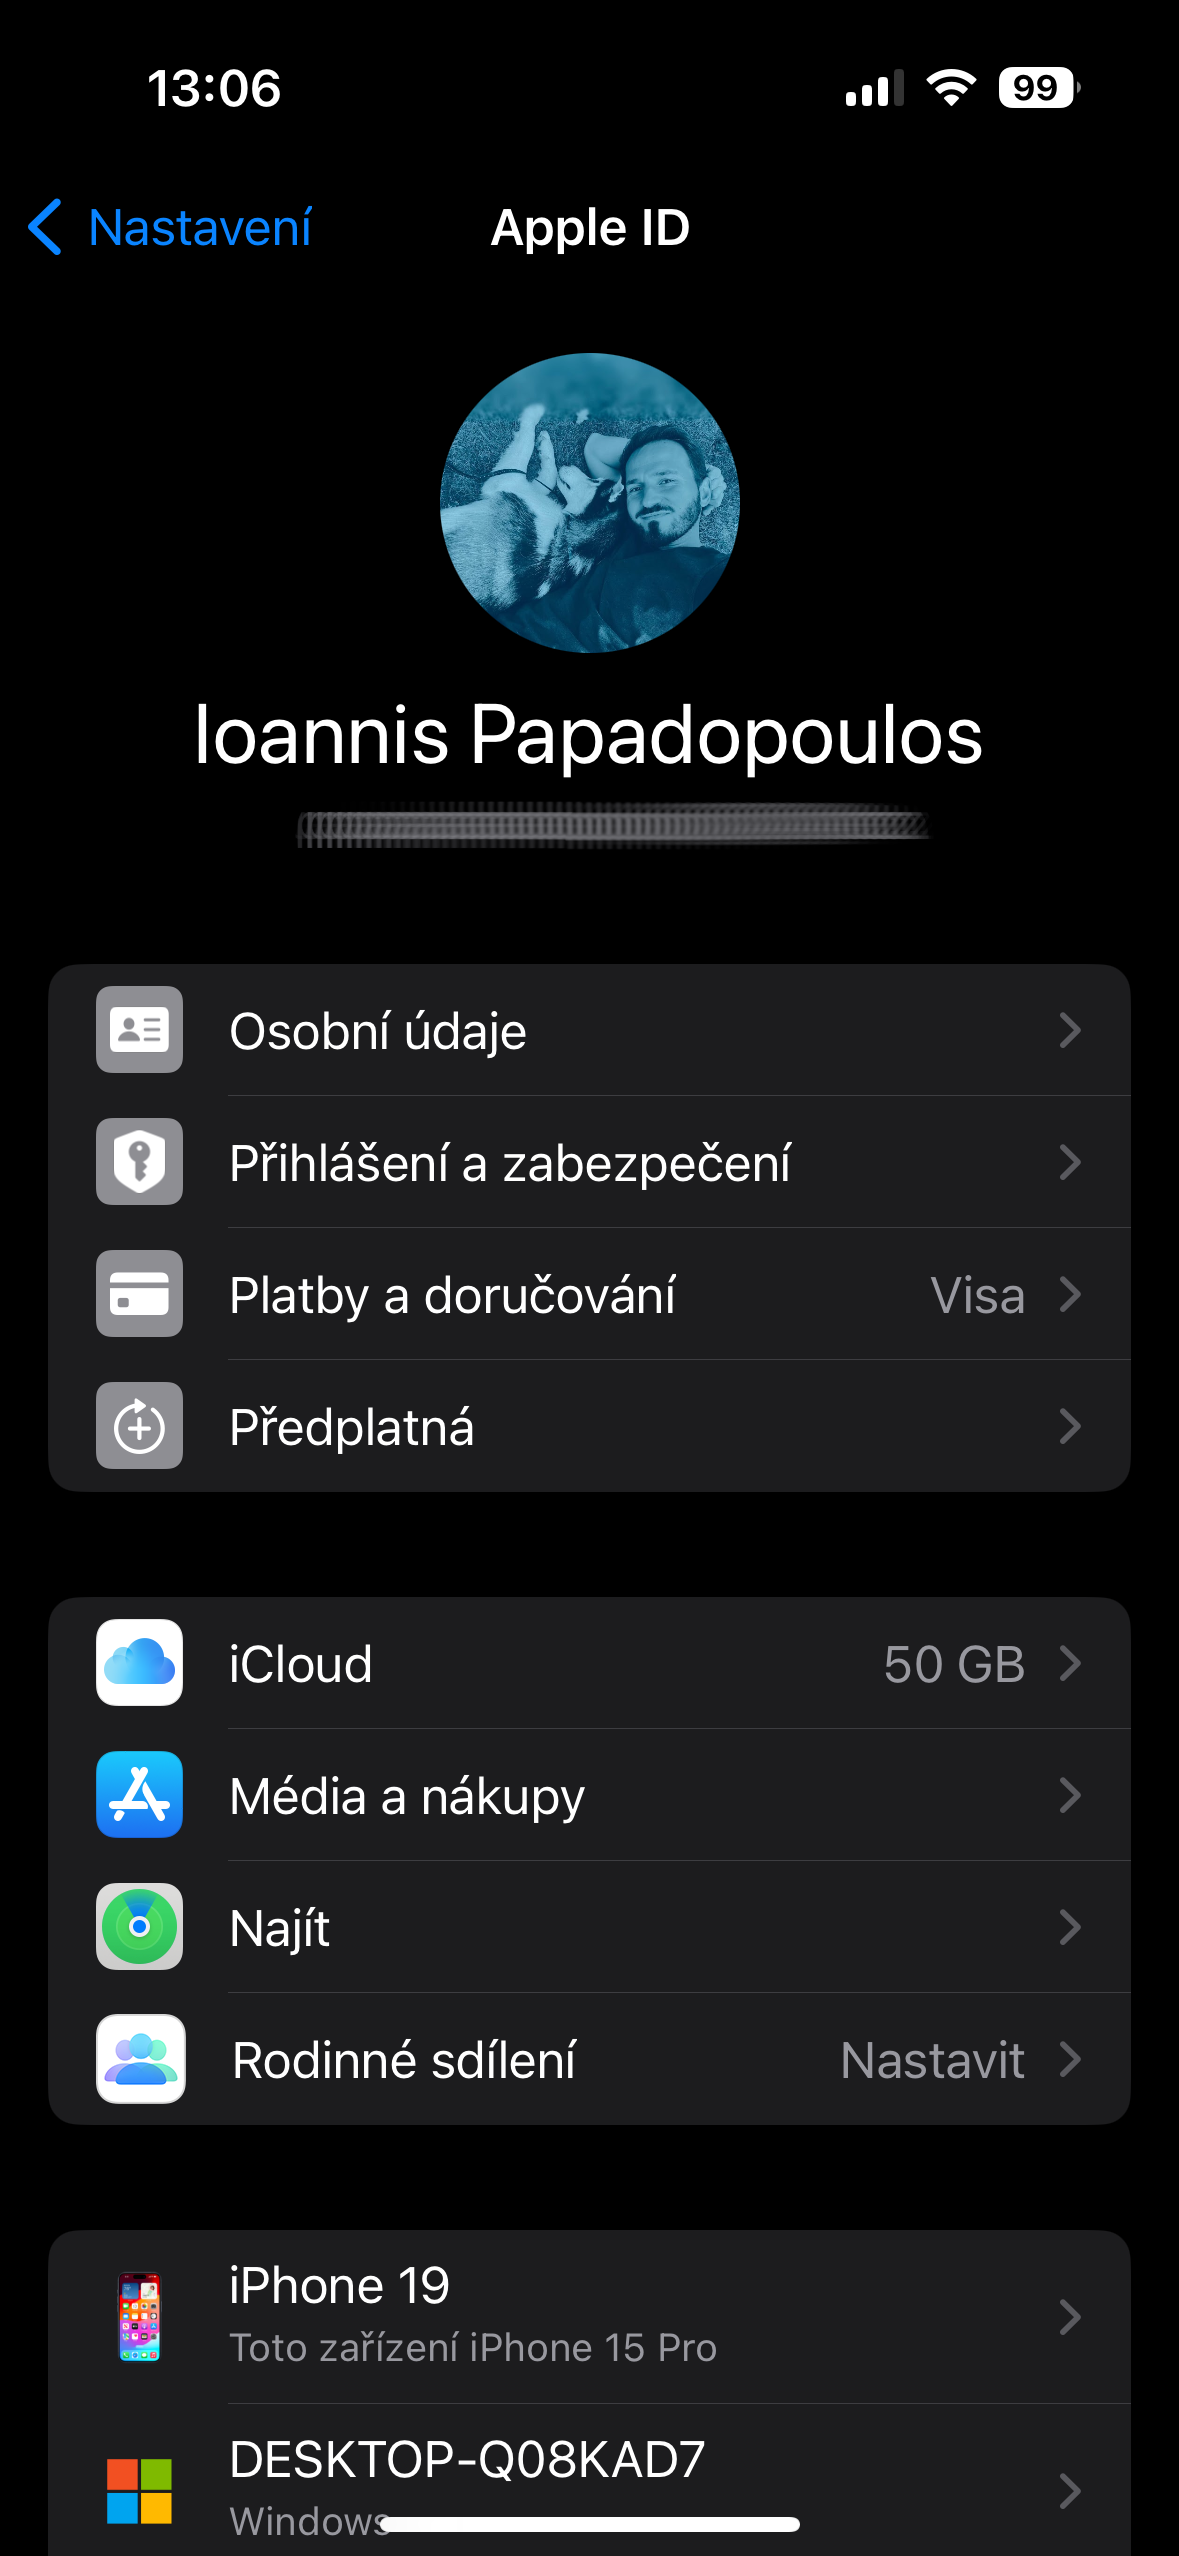 zrušení předplatného mobilenet.cz radí